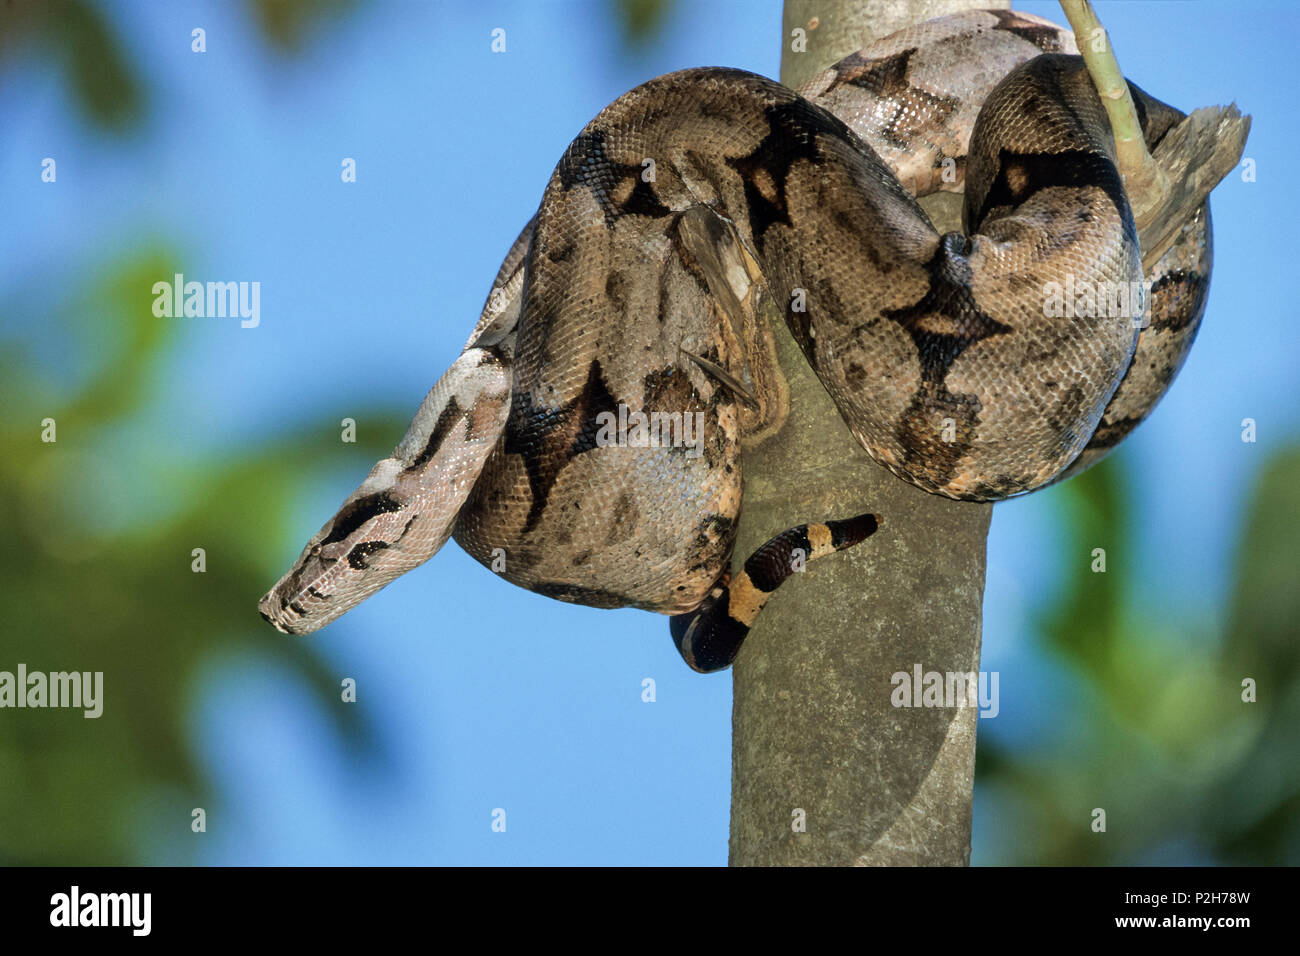 La serpiente en el árbol, Boa constrictor, Pantanal, Brasil, América del Sur Foto de stock